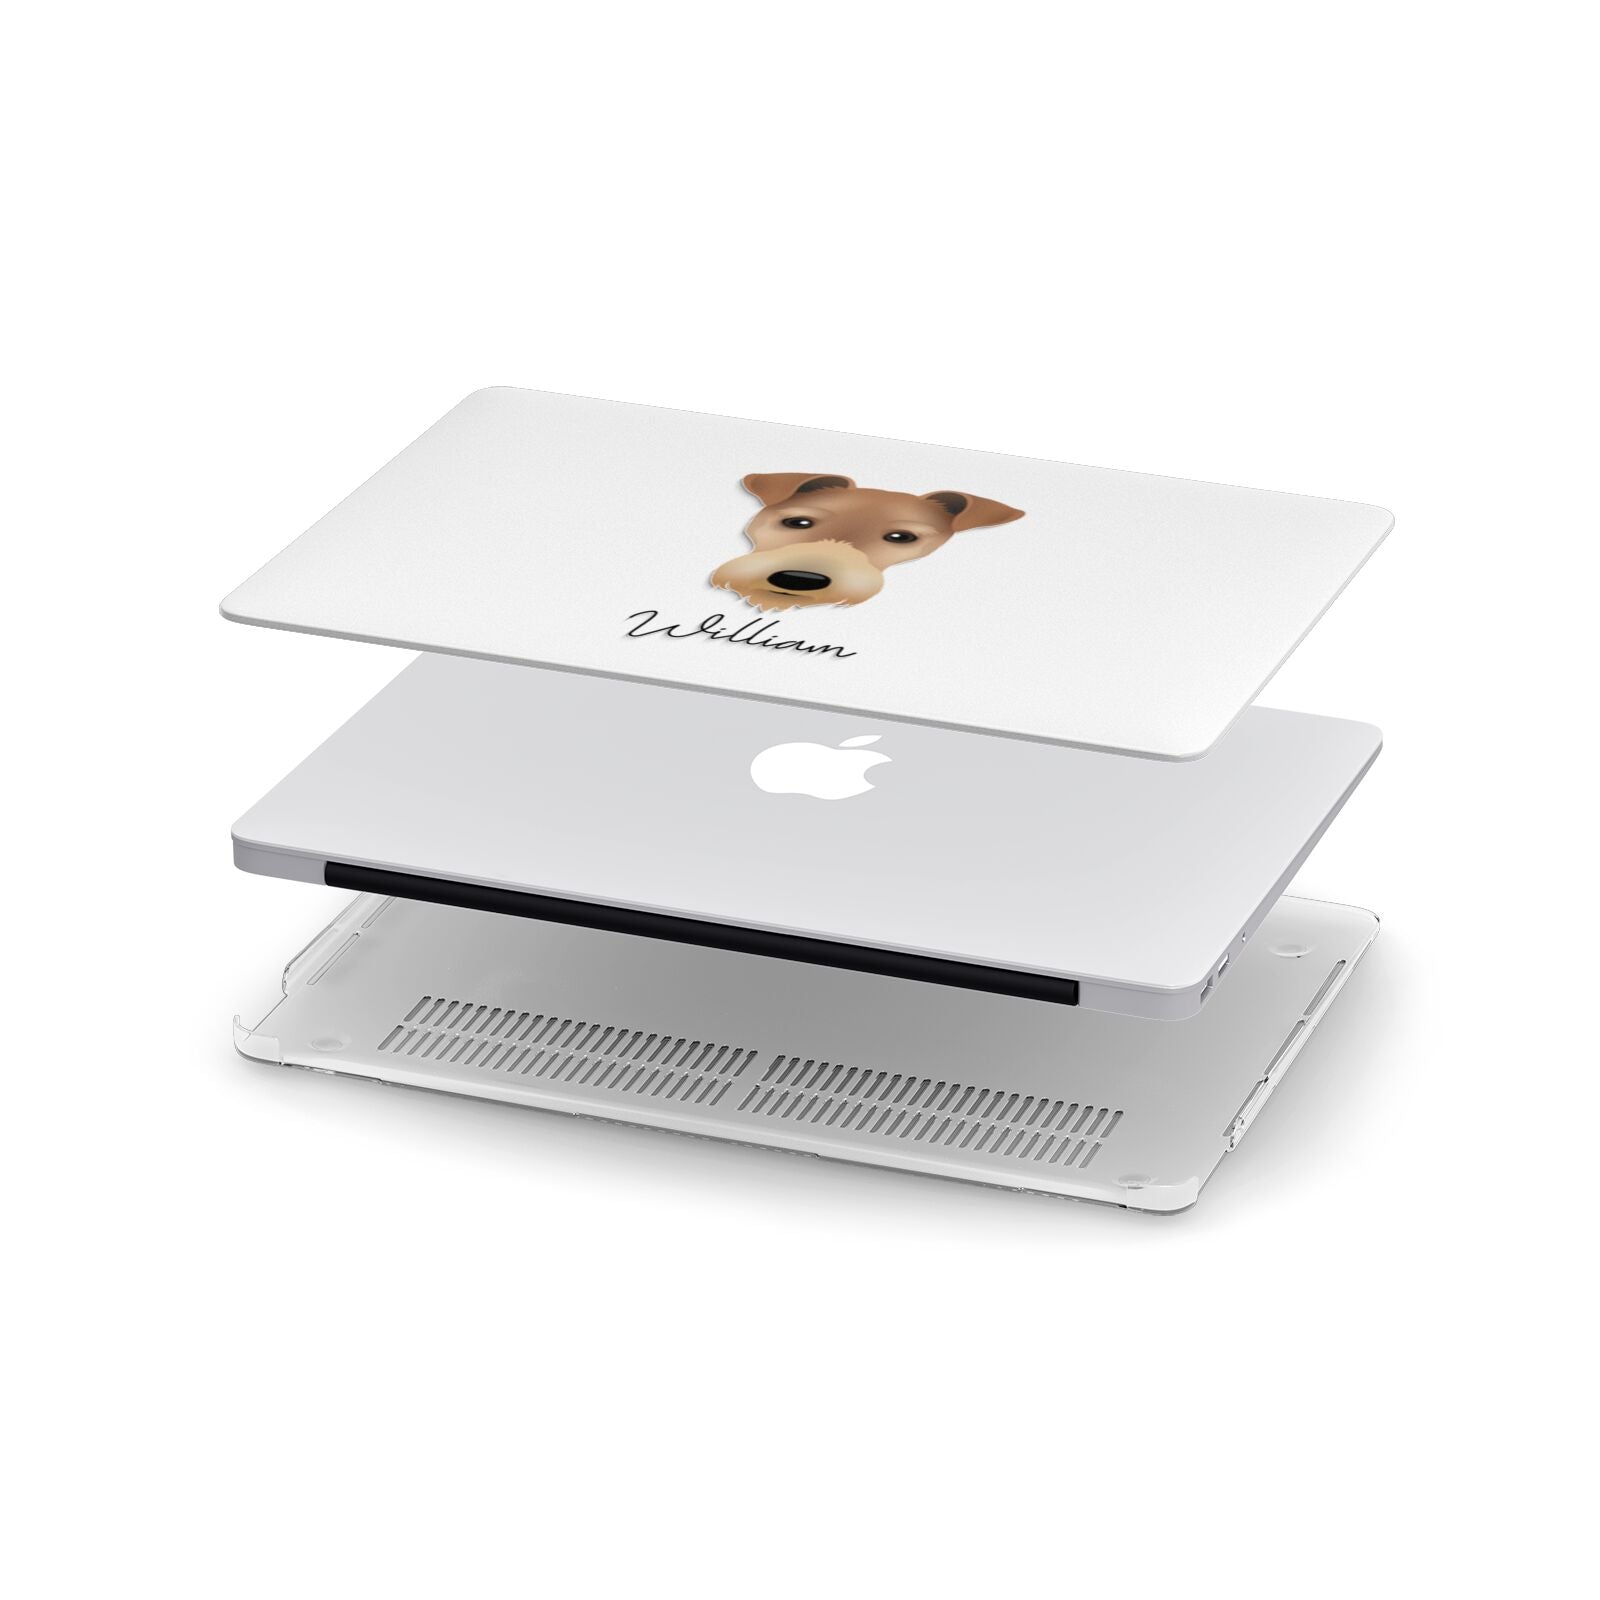 Fox Terrier Personalised Apple MacBook Case in Detail